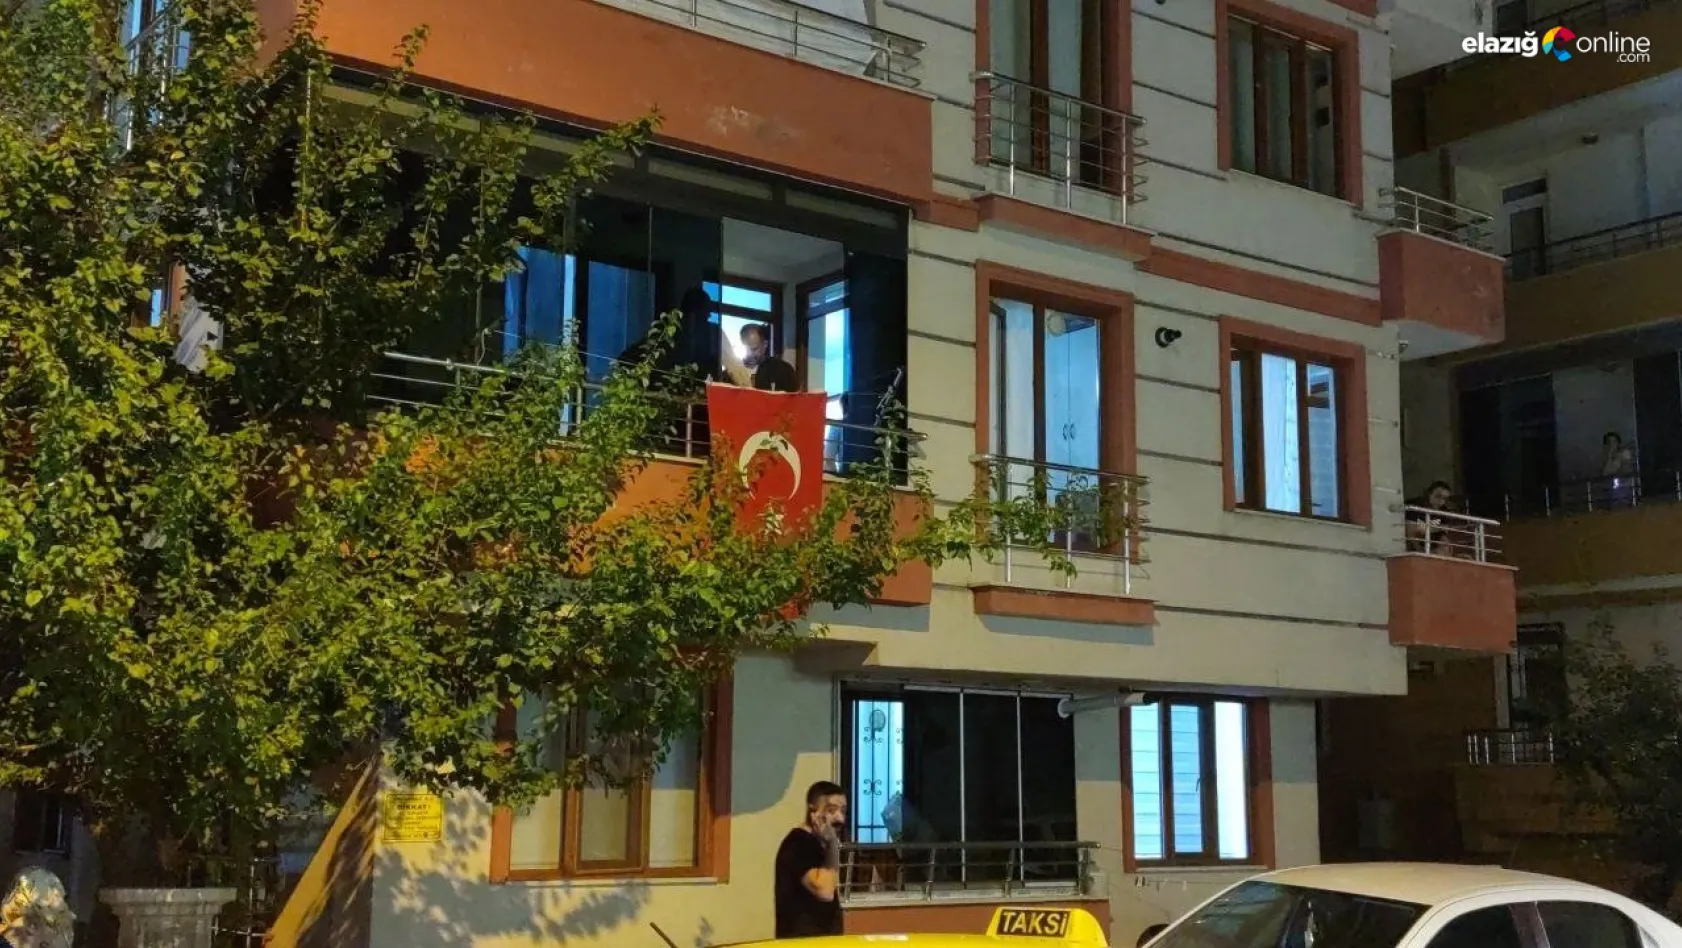 Şehidimiz Yusuf Ataş'ın Bingöl'de yaşayan ailesine acı haber verildi! Evine Türk bayrağı asıldı